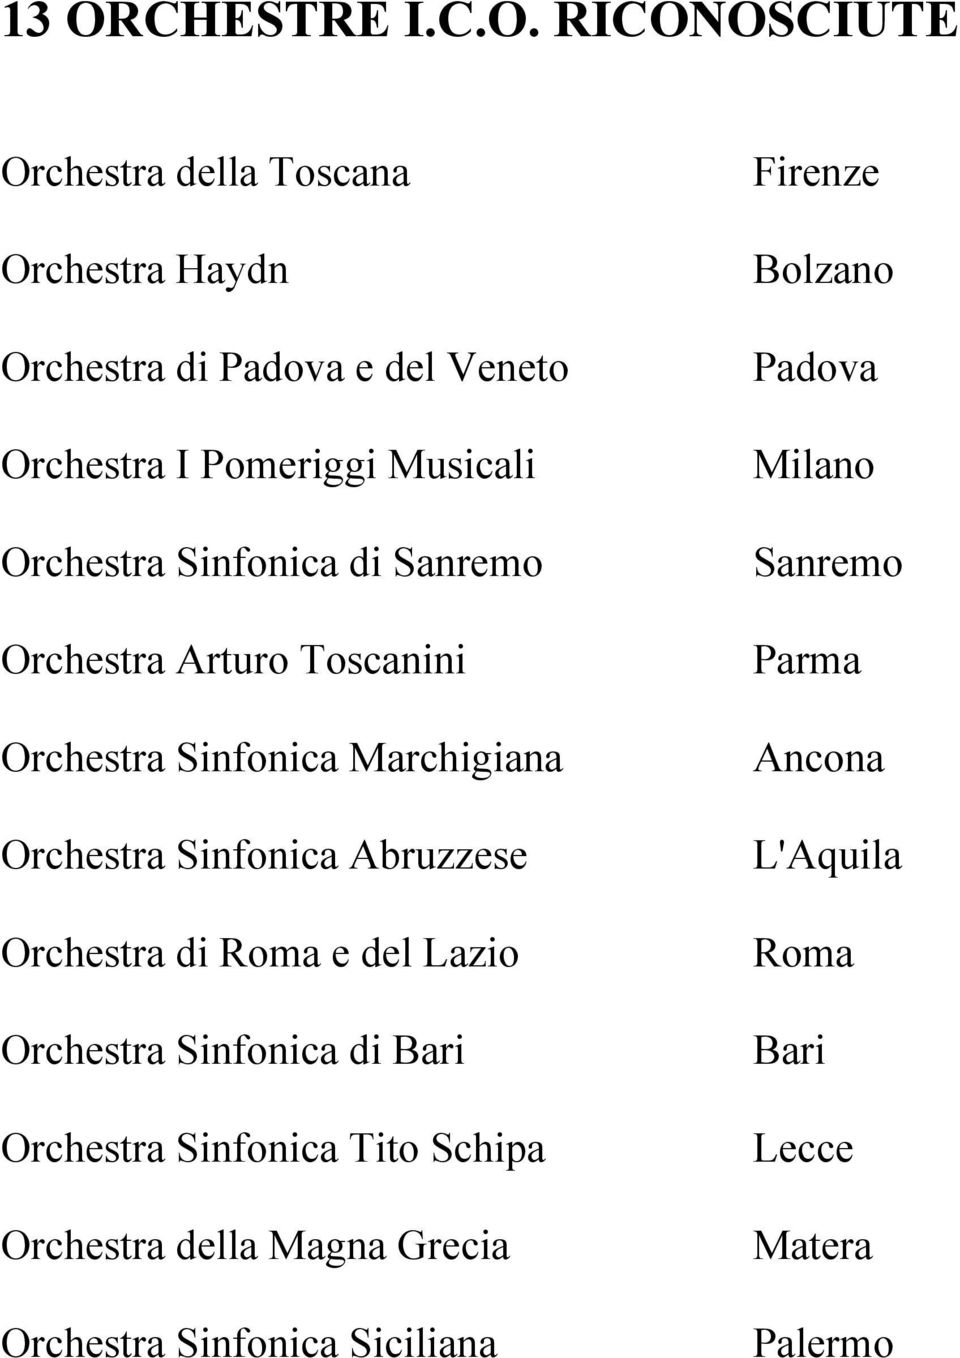 Sinfonica Abruzzese Orchestra di Roma e del Lazio Orchestra Sinfonica di Bari Orchestra Sinfonica Tito Schipa Orchestra